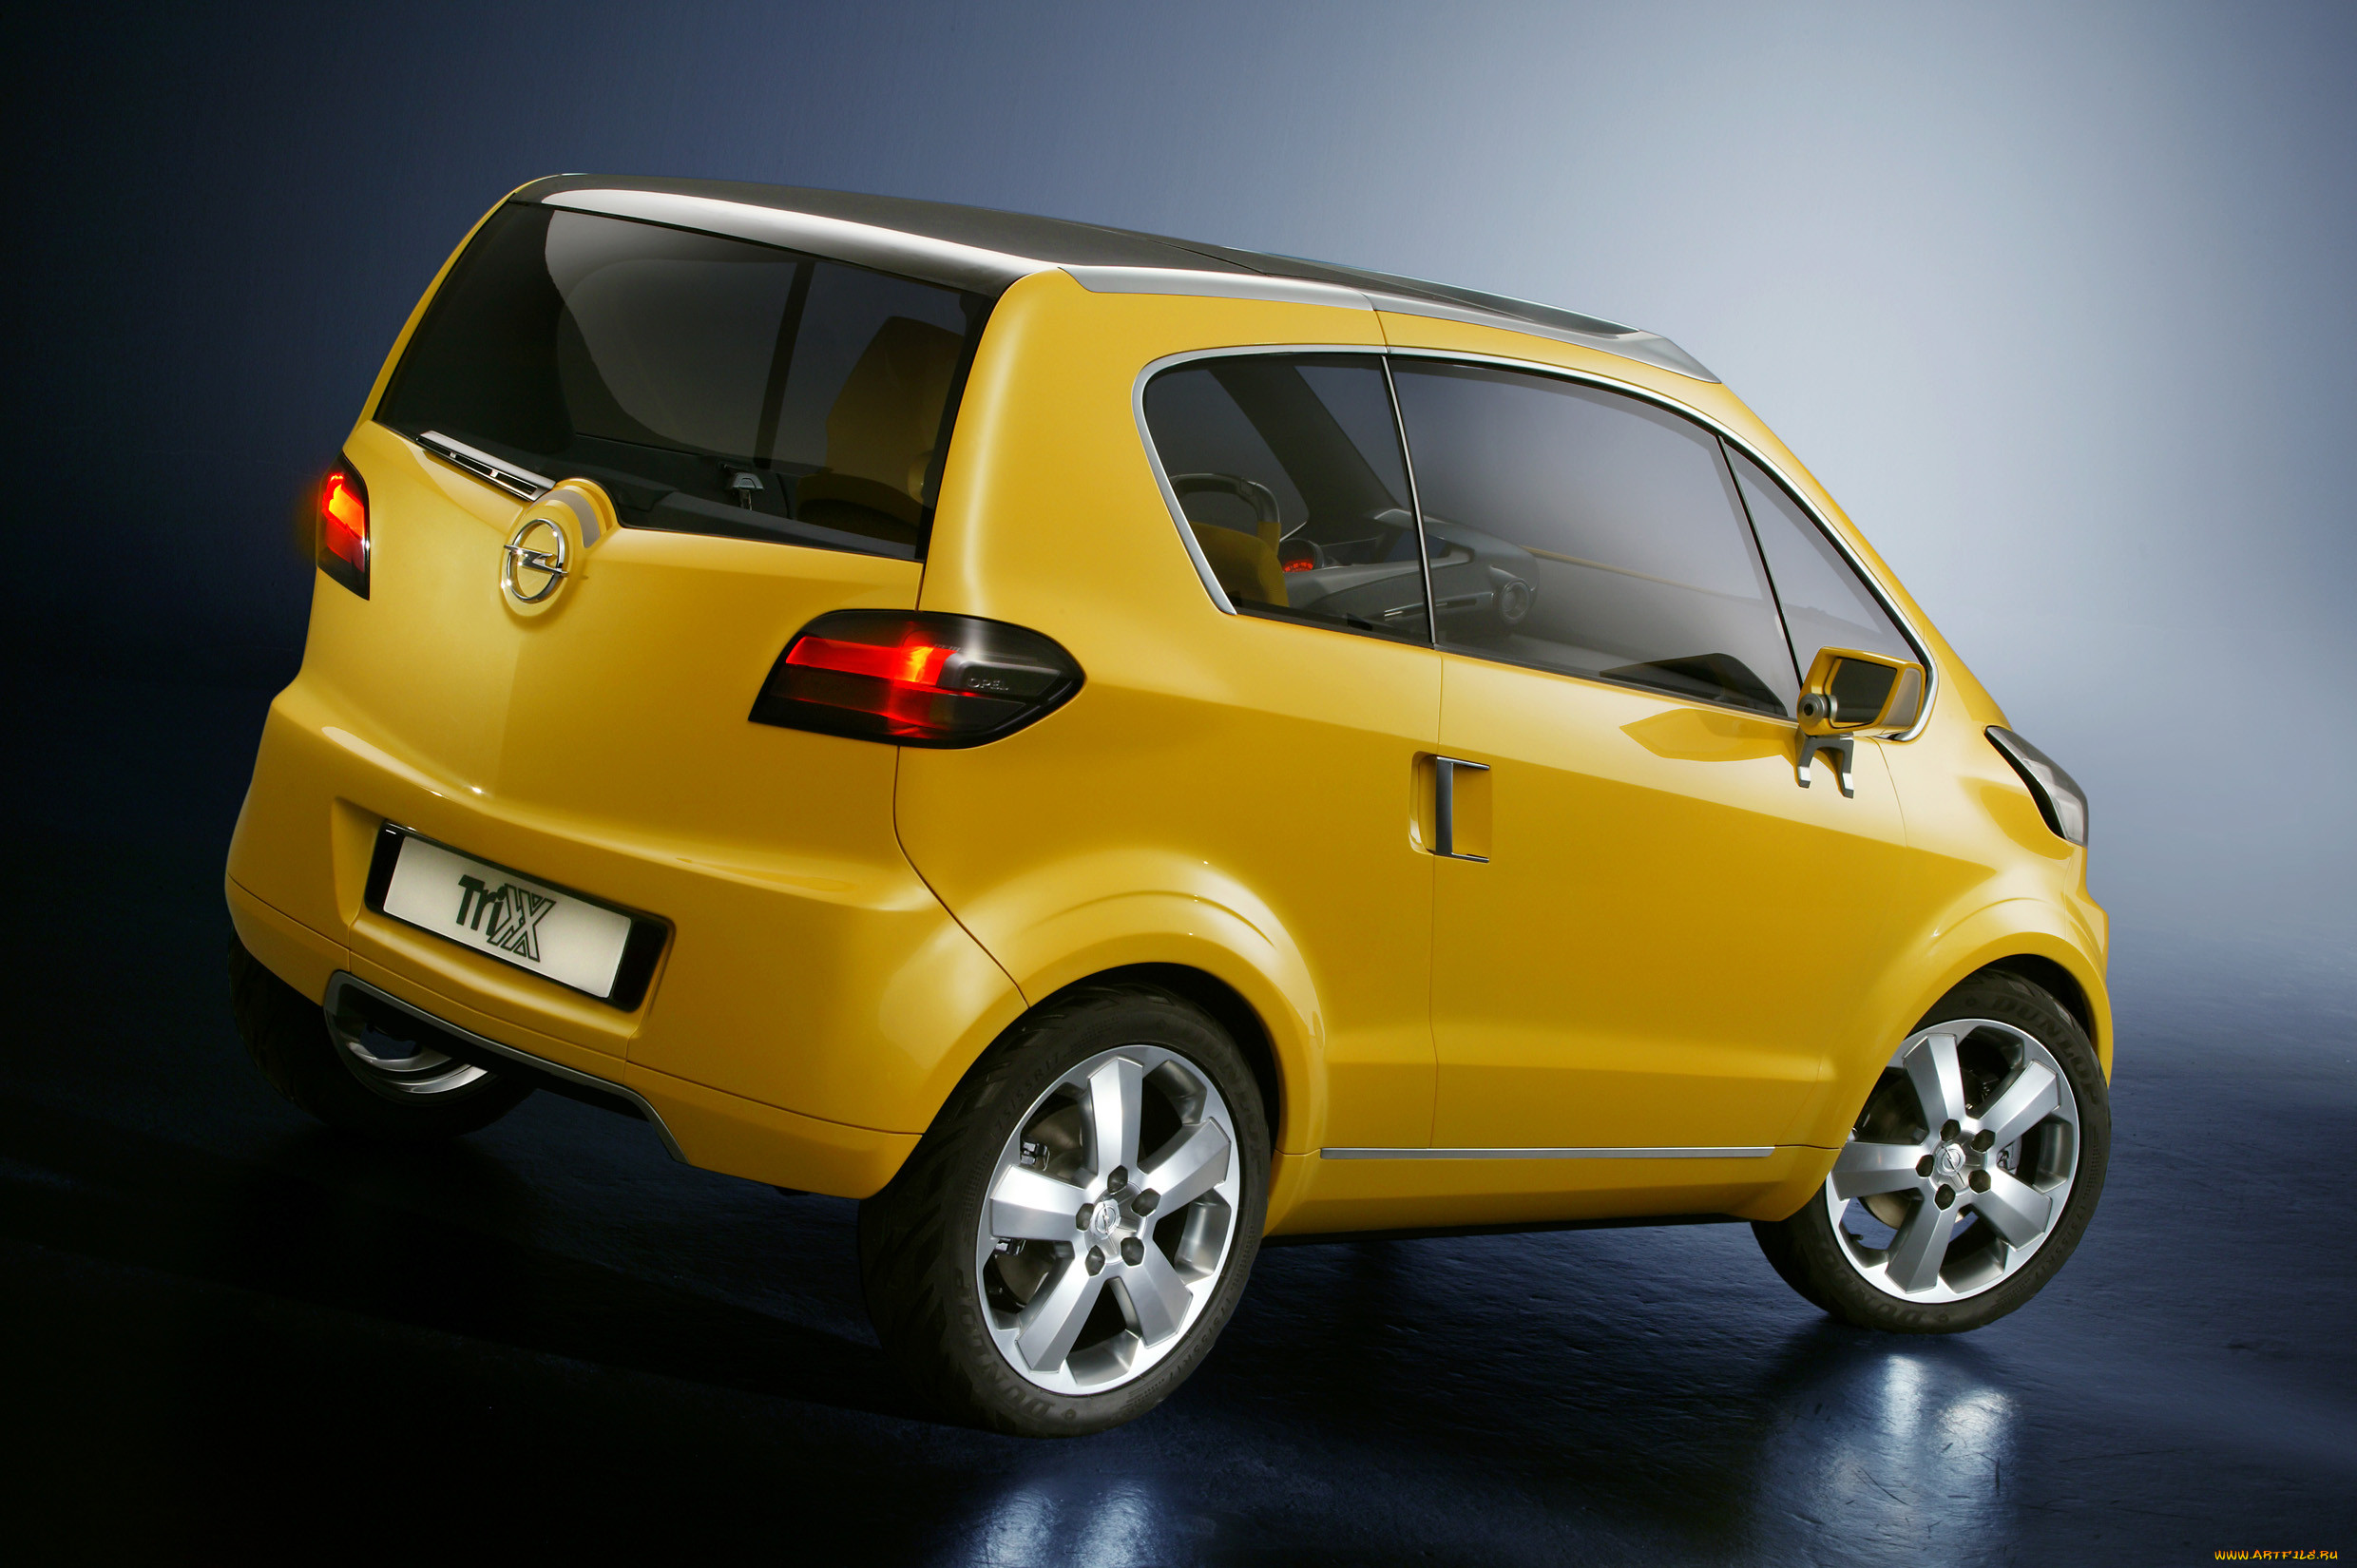 Марка машины малолитражки фото. Opel Trixx. Форд малолитражка. Opel Trixx Concept. Сузуки малолитражка модель.